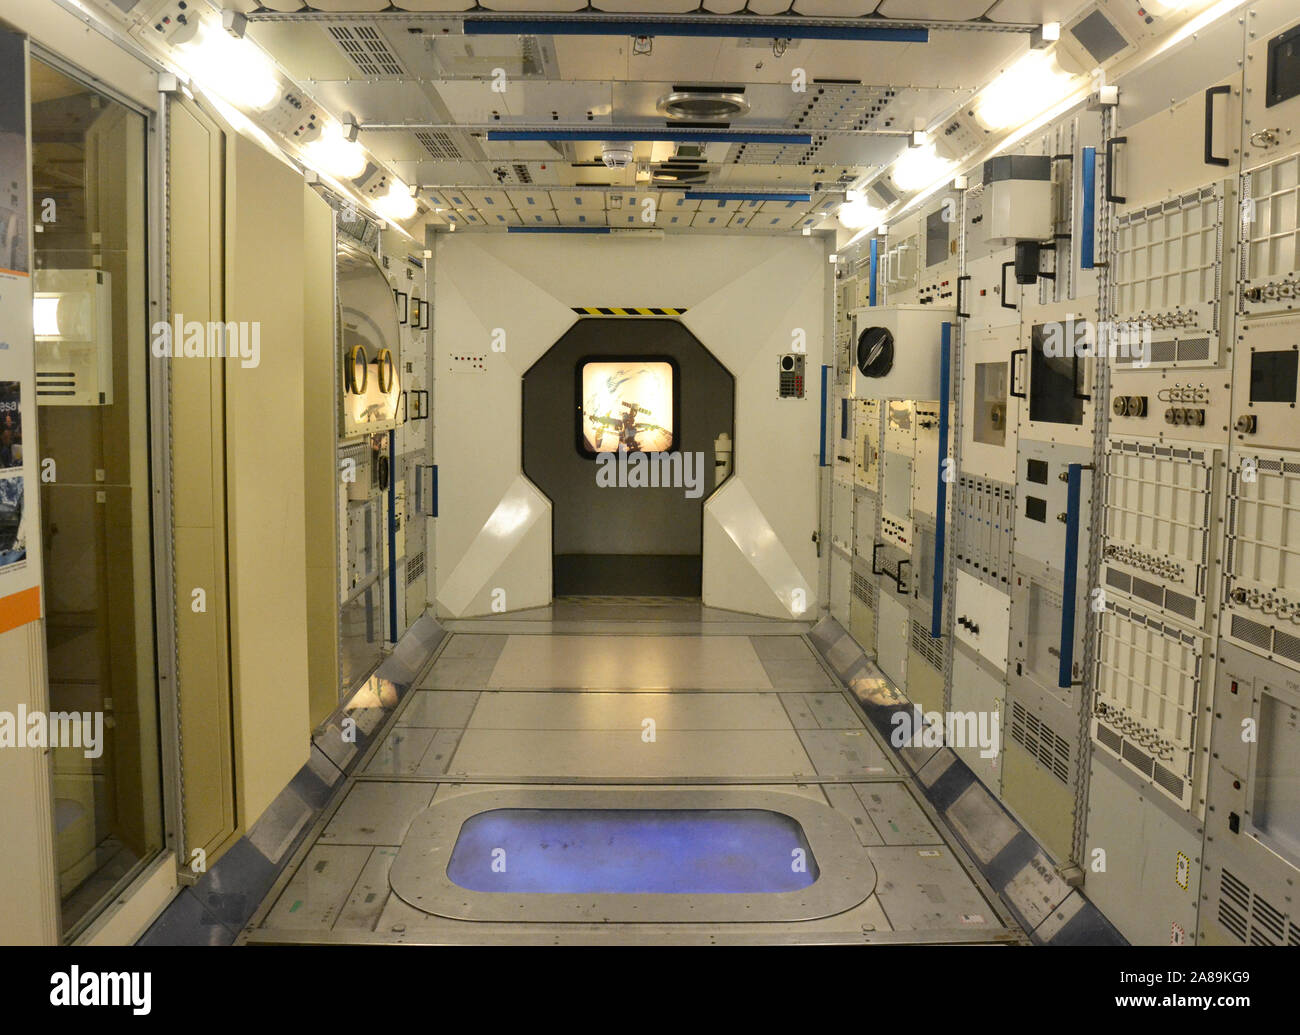 Module Columbus, l'Agence spatiale européenne plus importante contribution à la Station spatiale internationale, dans le National Space Centre, Leicester, UK Banque D'Images